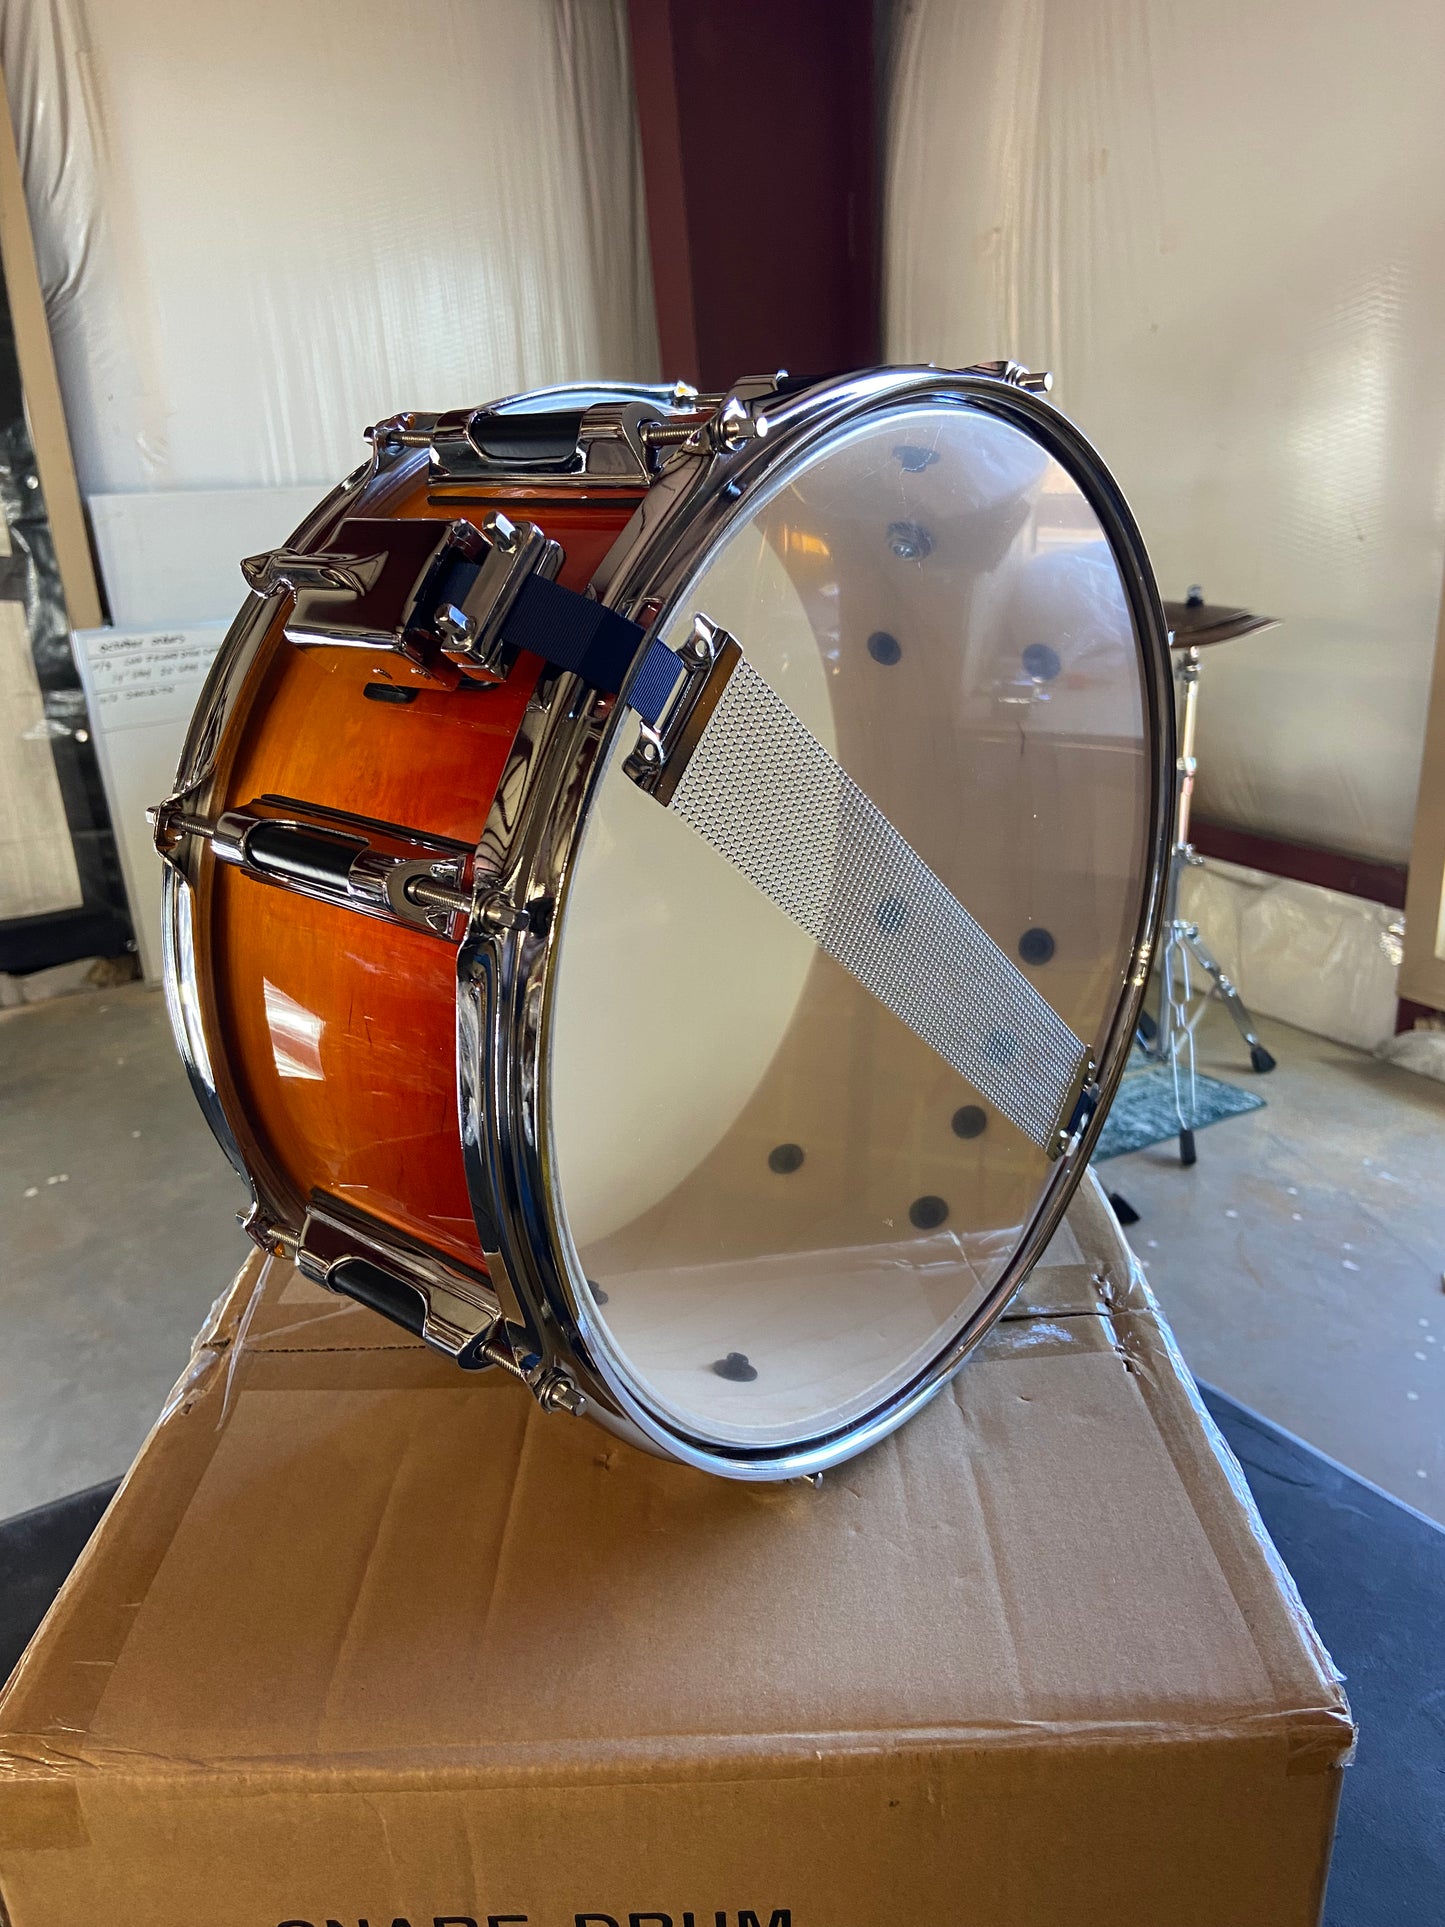 Orange snare drum